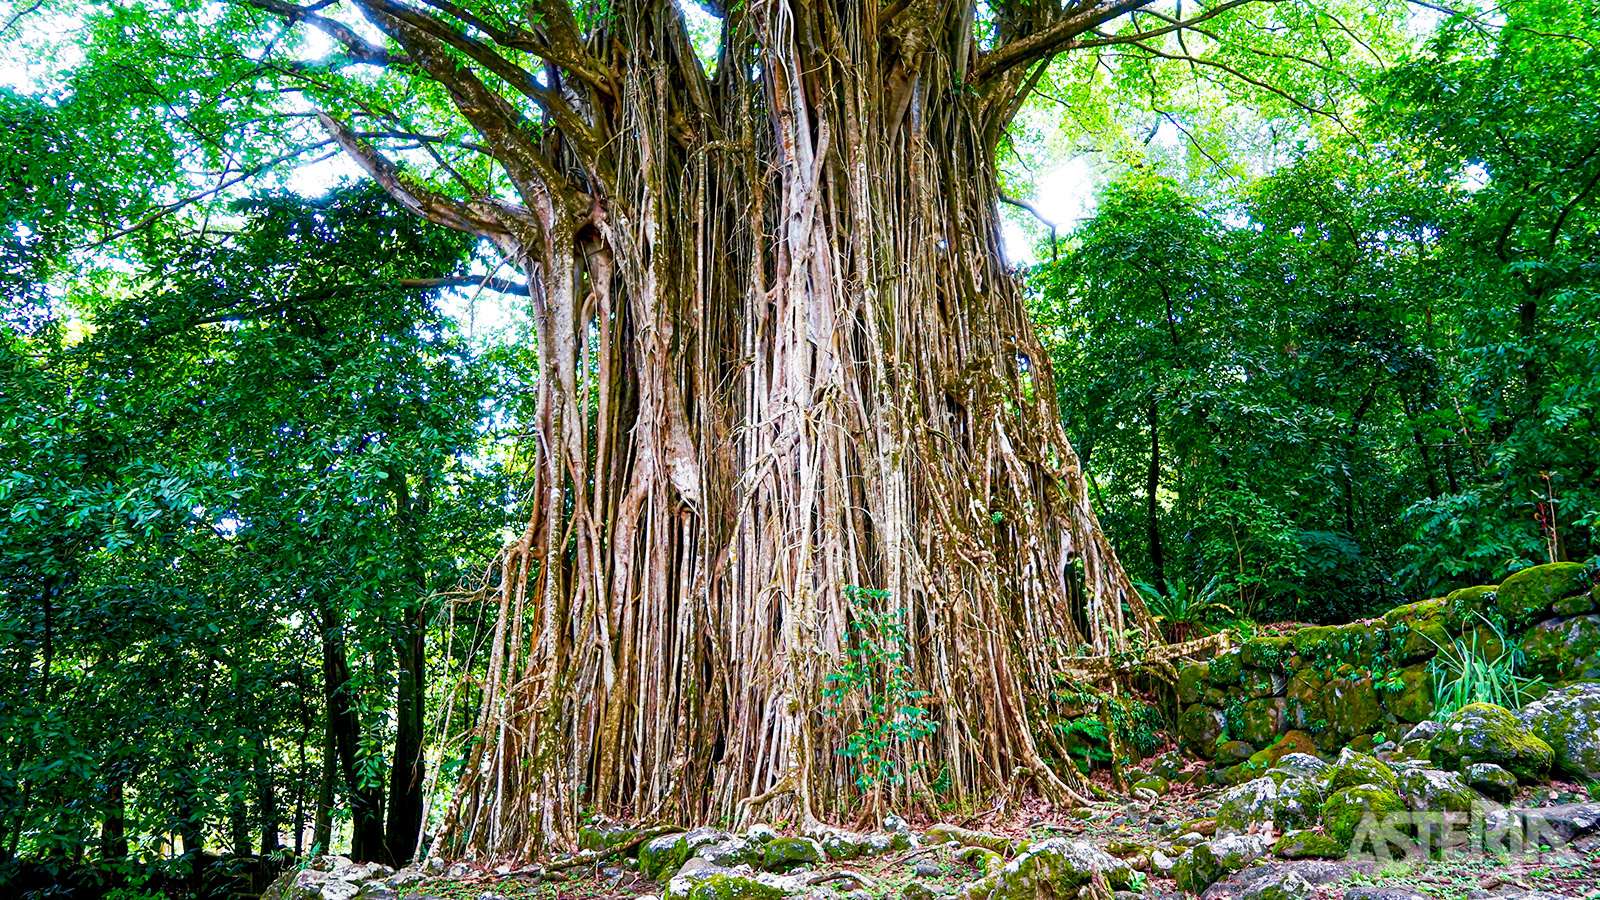 Ontdek een unieke natuur zoals deze banyan boom op Nuku Hiva,